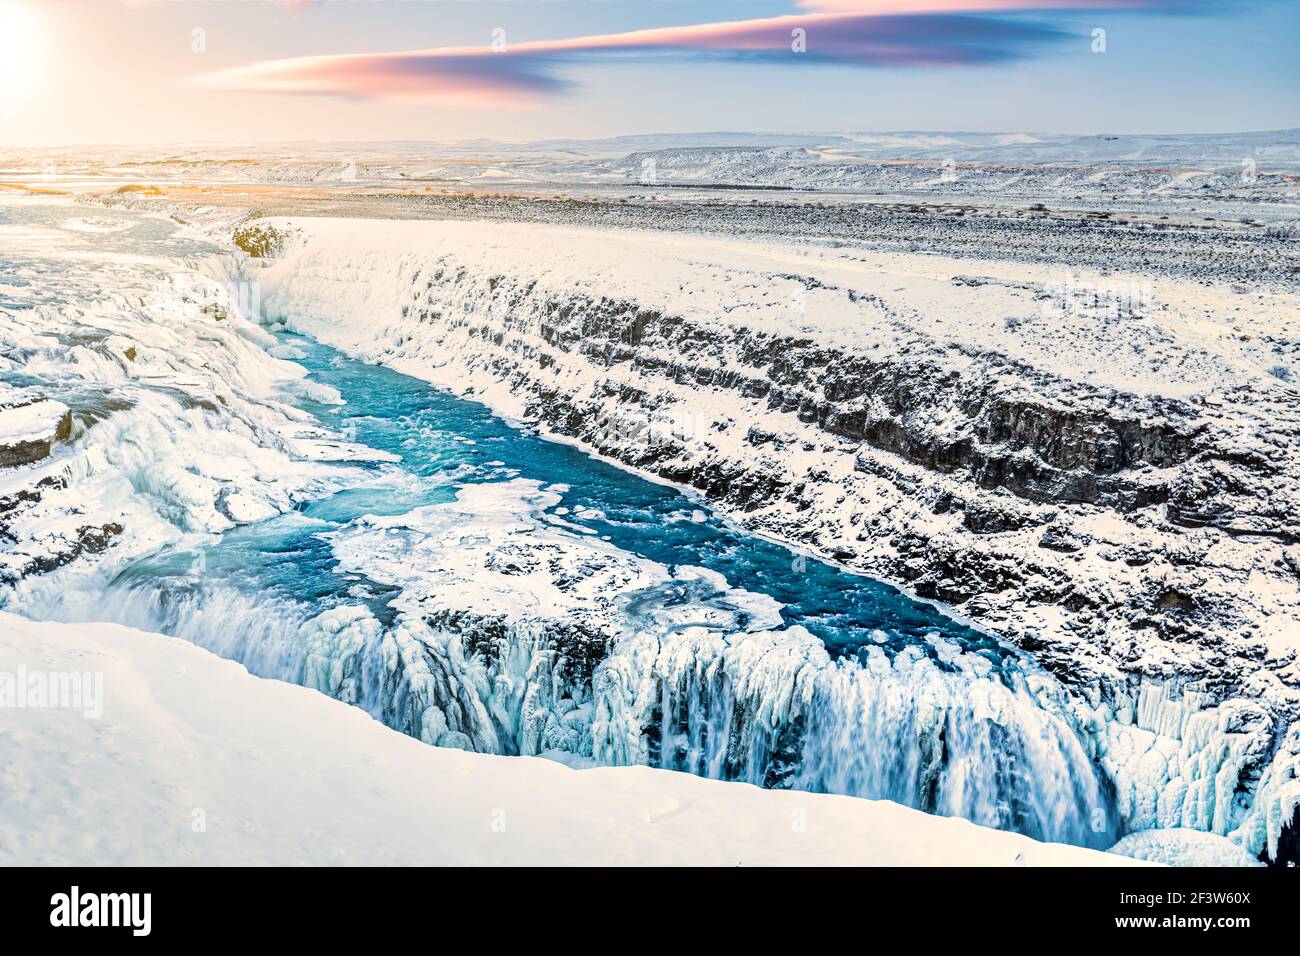 Gullfoss cascada durante el invierno, en Islandia. Gullfoss es una de las atracciones turísticas más populares de Islandia. Foto de stock